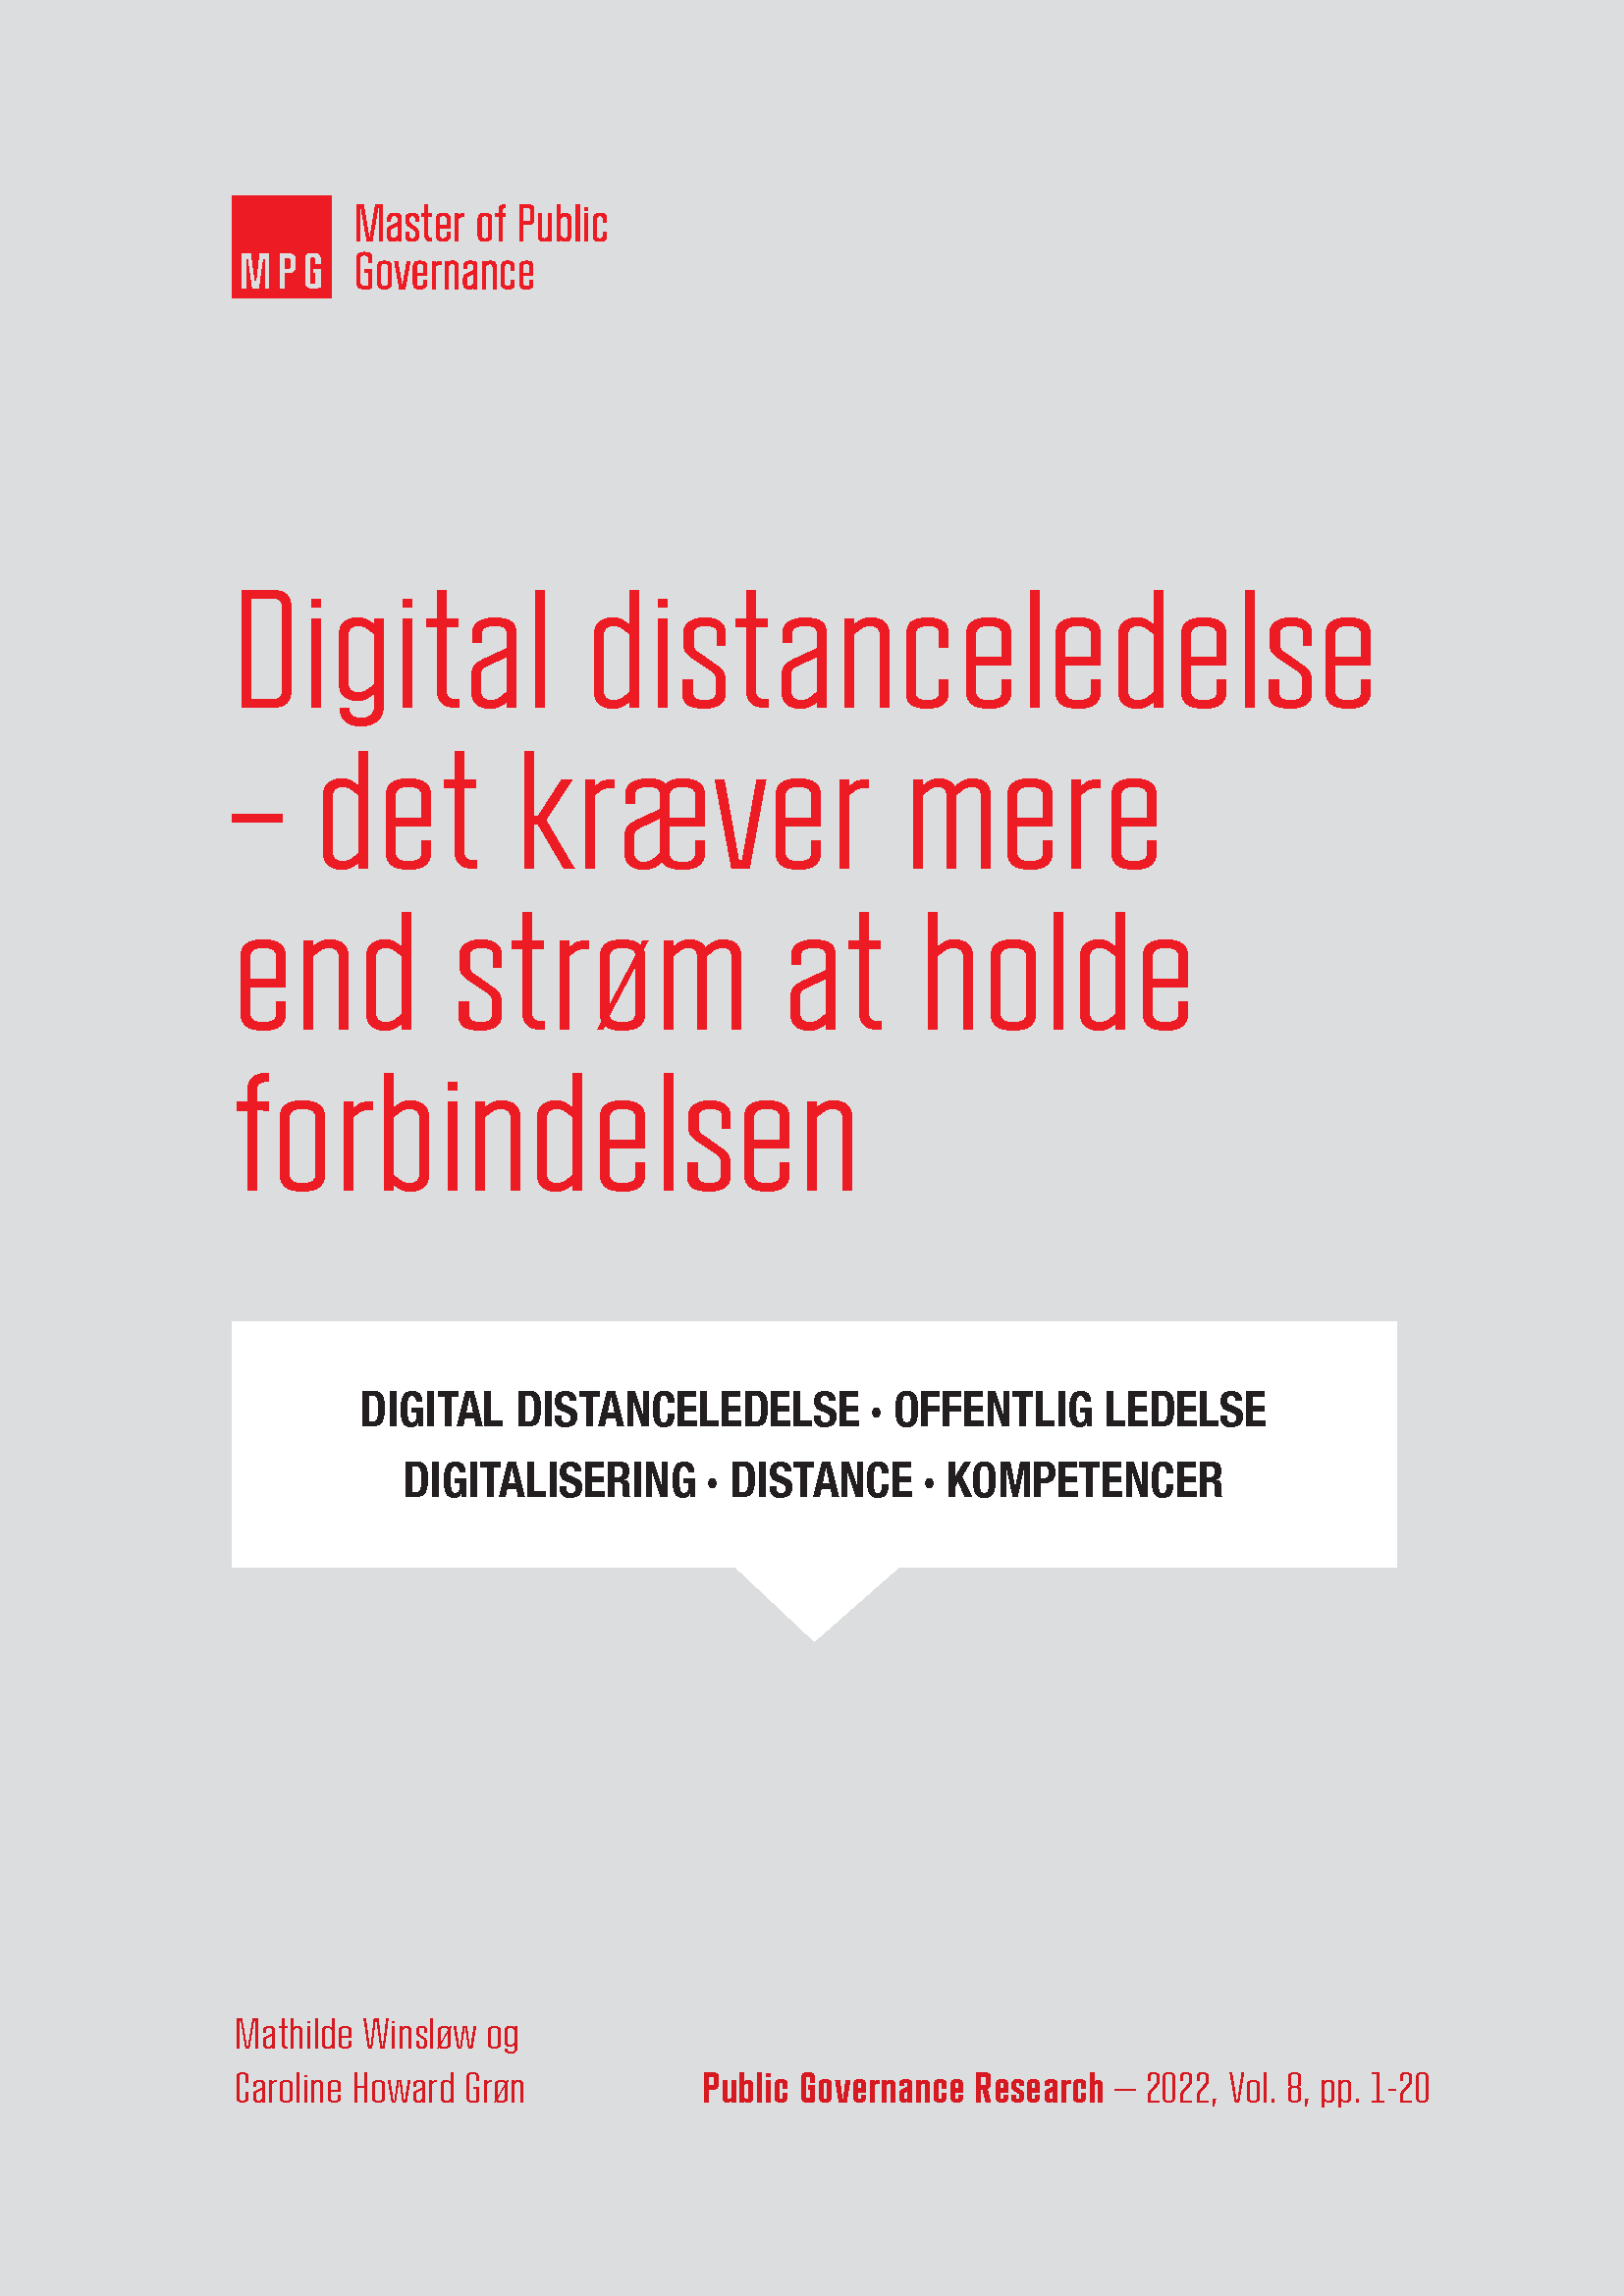 Digital distanceledelse – det kræver mere end strøm at holde forbindelsen